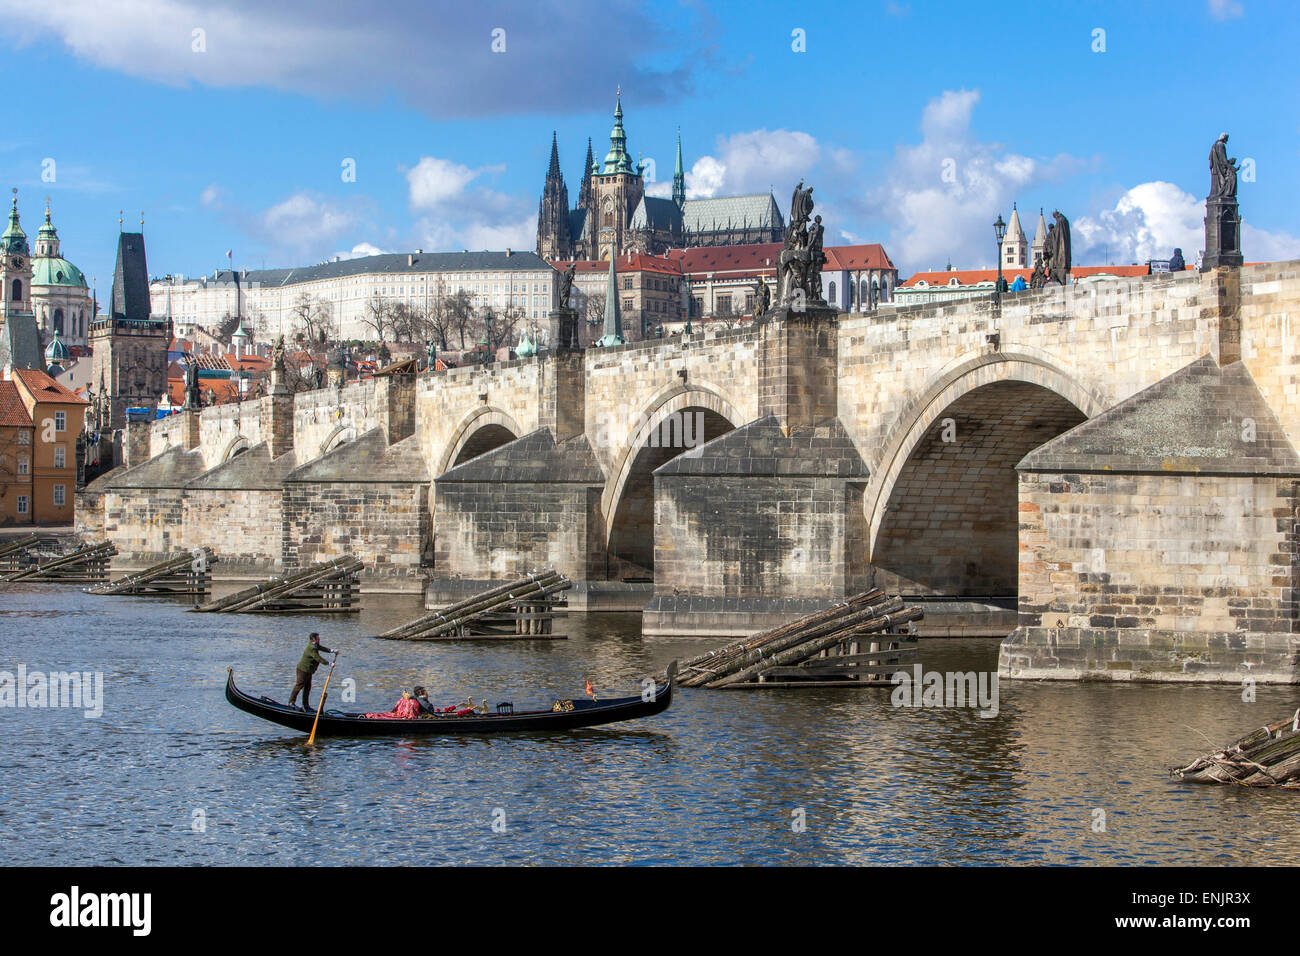 Panorama der Karlsbrücke und Prager Burg Blick mit Moldau venezianische Gondel, Gondoliere Tschechische Republik weltberühmte Gebäude Stockfoto